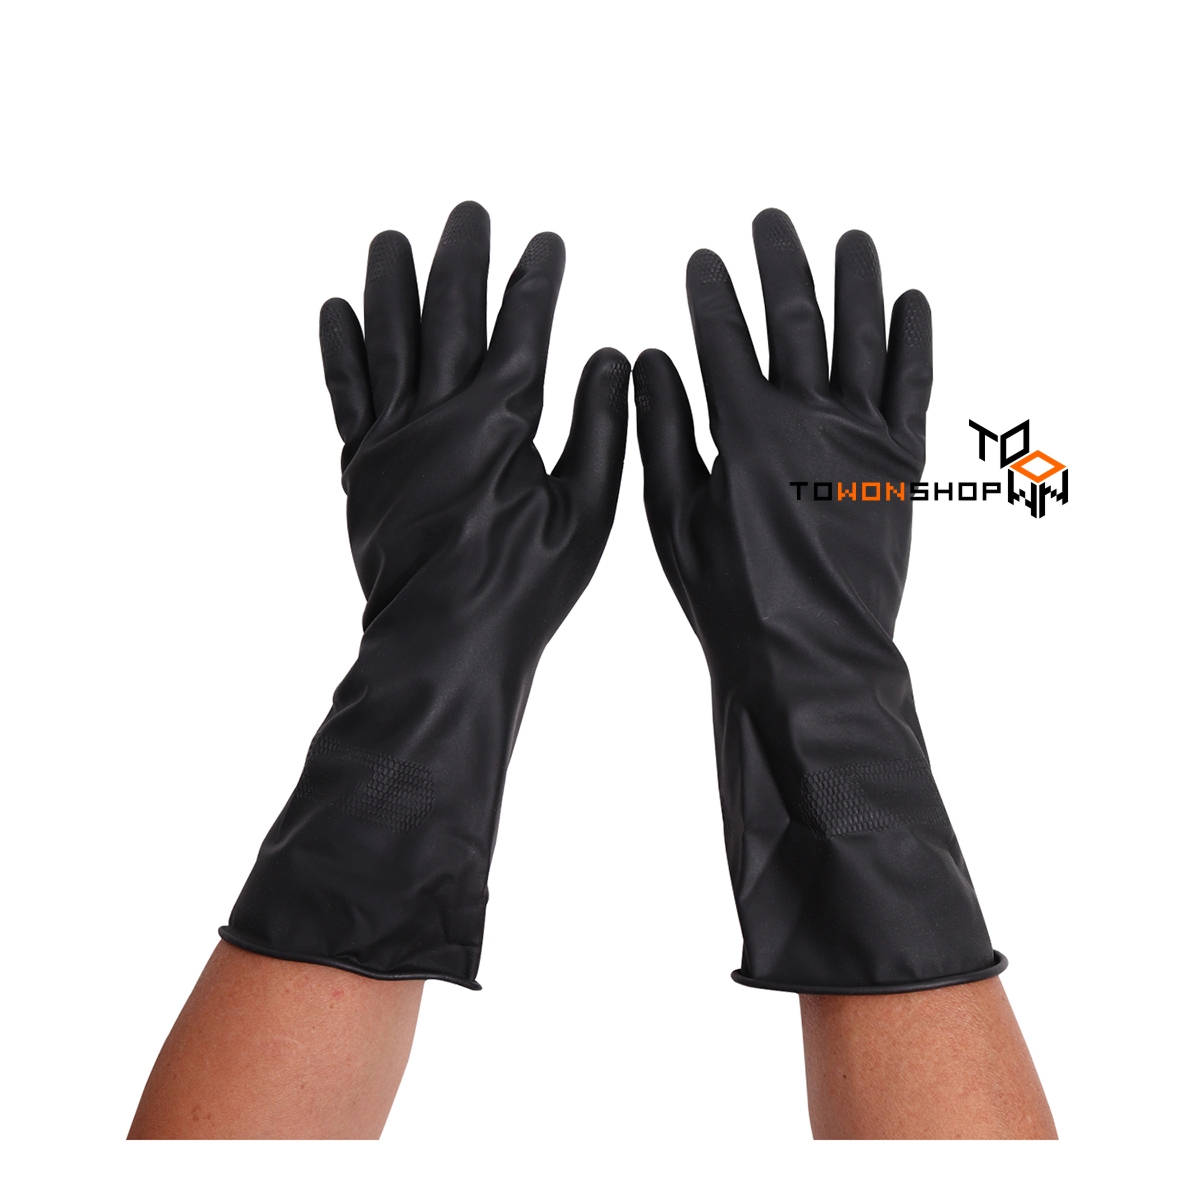 ถุงมือยาง ถุงมือยางแม่บ้าน MASTER Natural Latex Rubber Household Gloves สีดำ  color Black SIZE M สีดำ ขนาดกลาง x 1 คู่